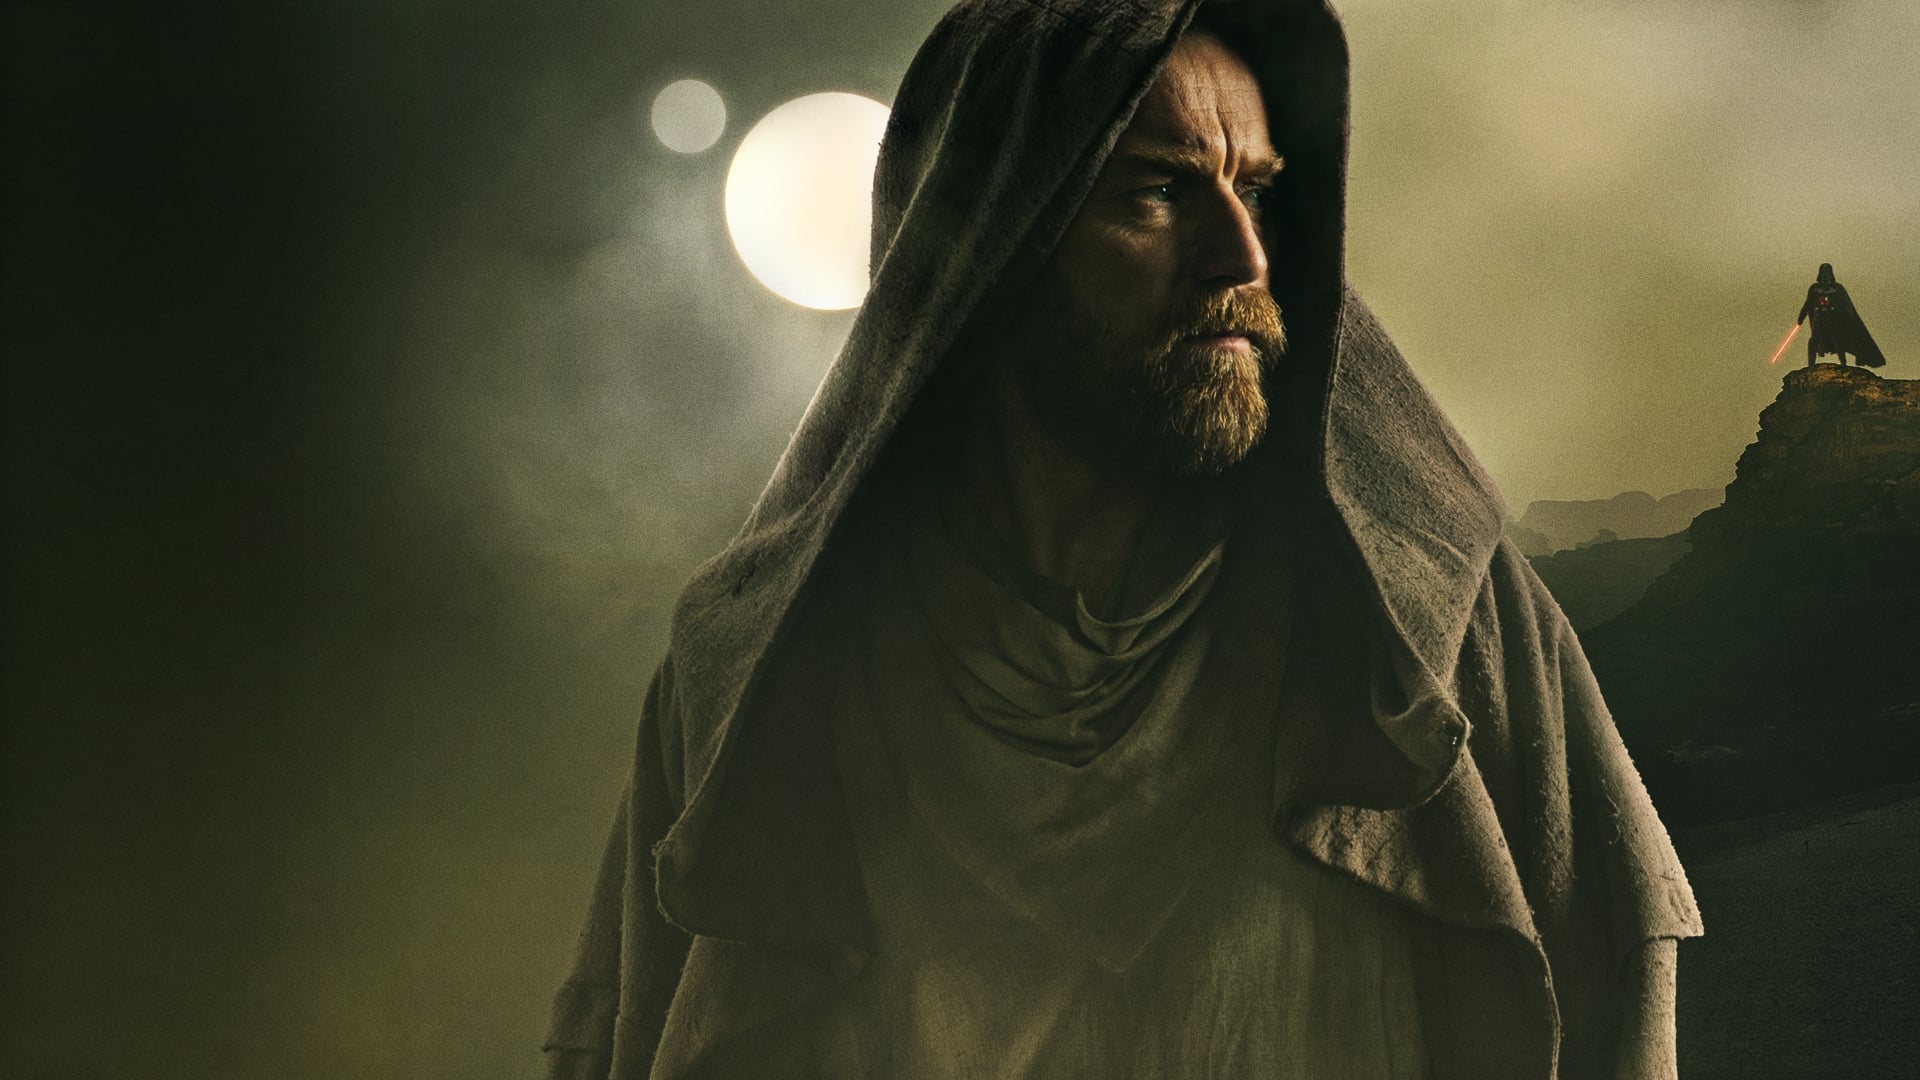 Obi-Wan Kenobi - Season 1 Episode 3